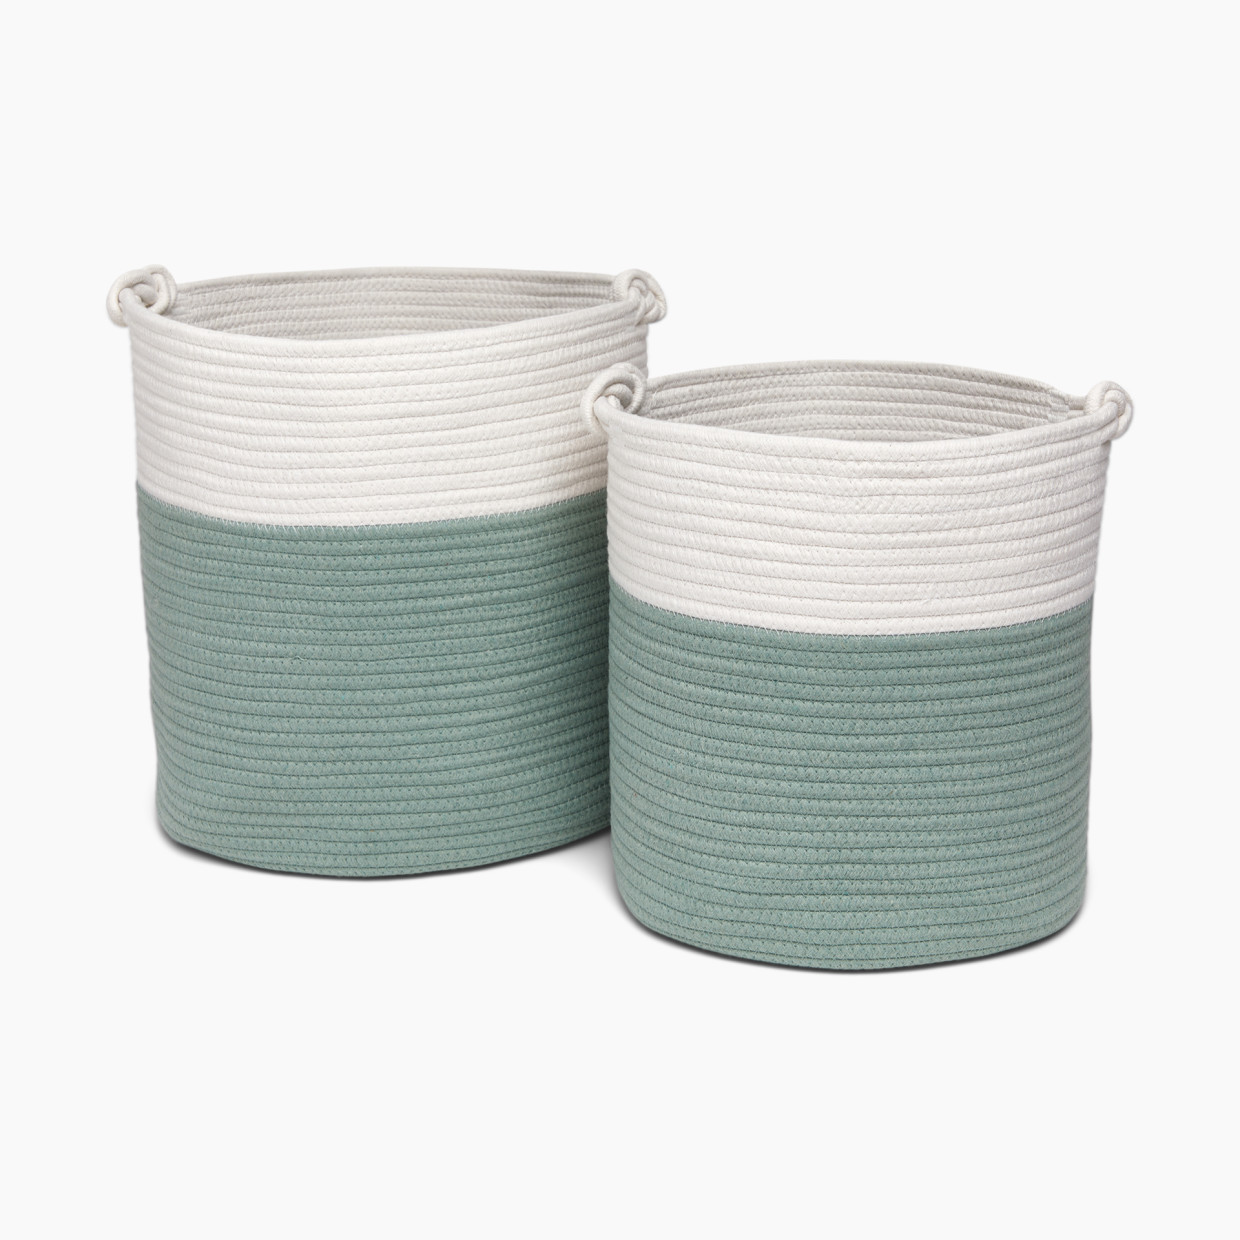 Sprucely Large & Medium Rope Basket Set - Sage, Large/Medium.